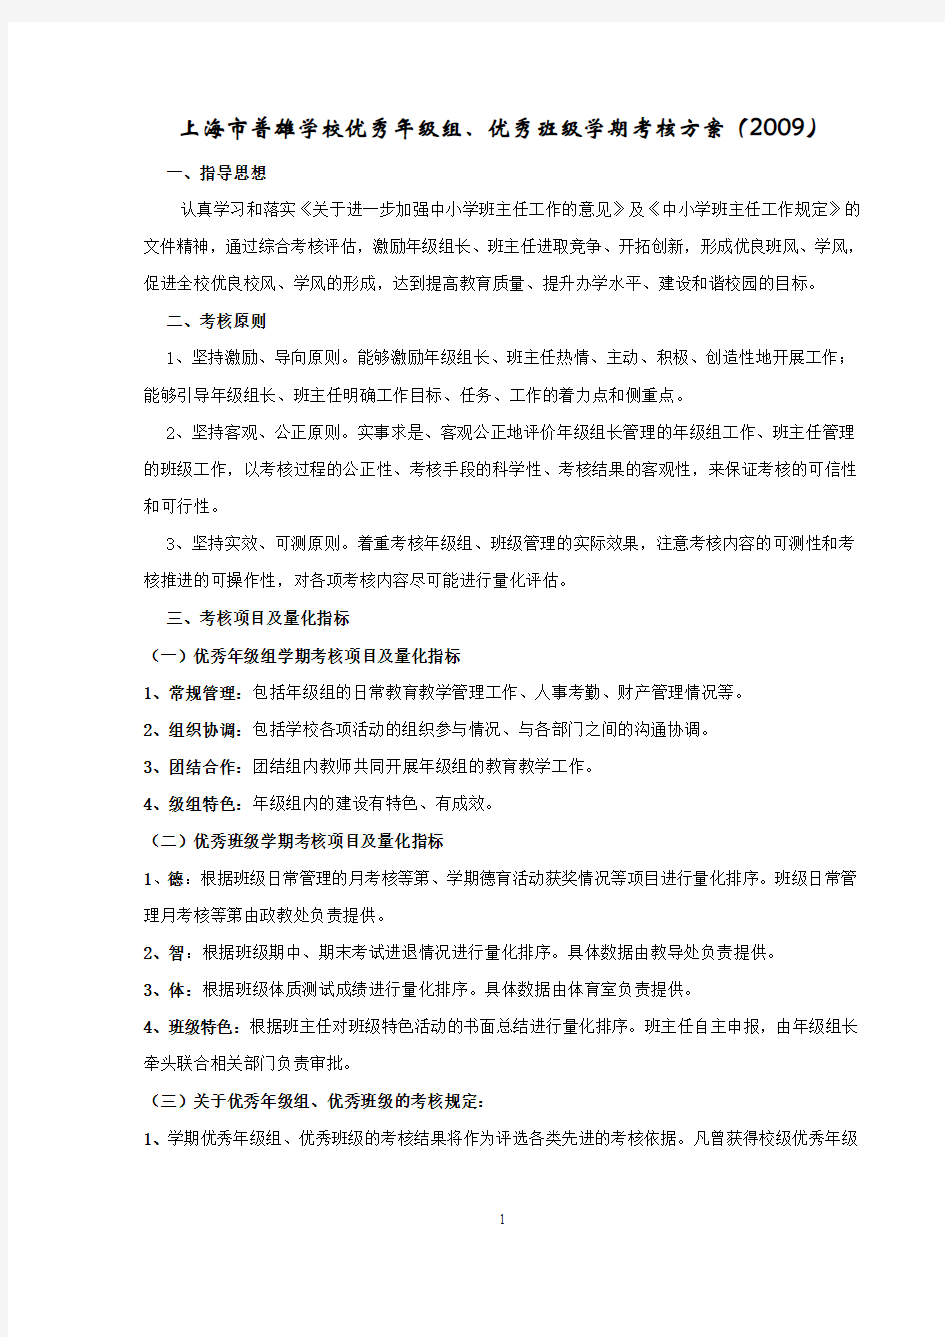 上海市普雄学校优秀年级组、优秀班级学期考核方案(2009)